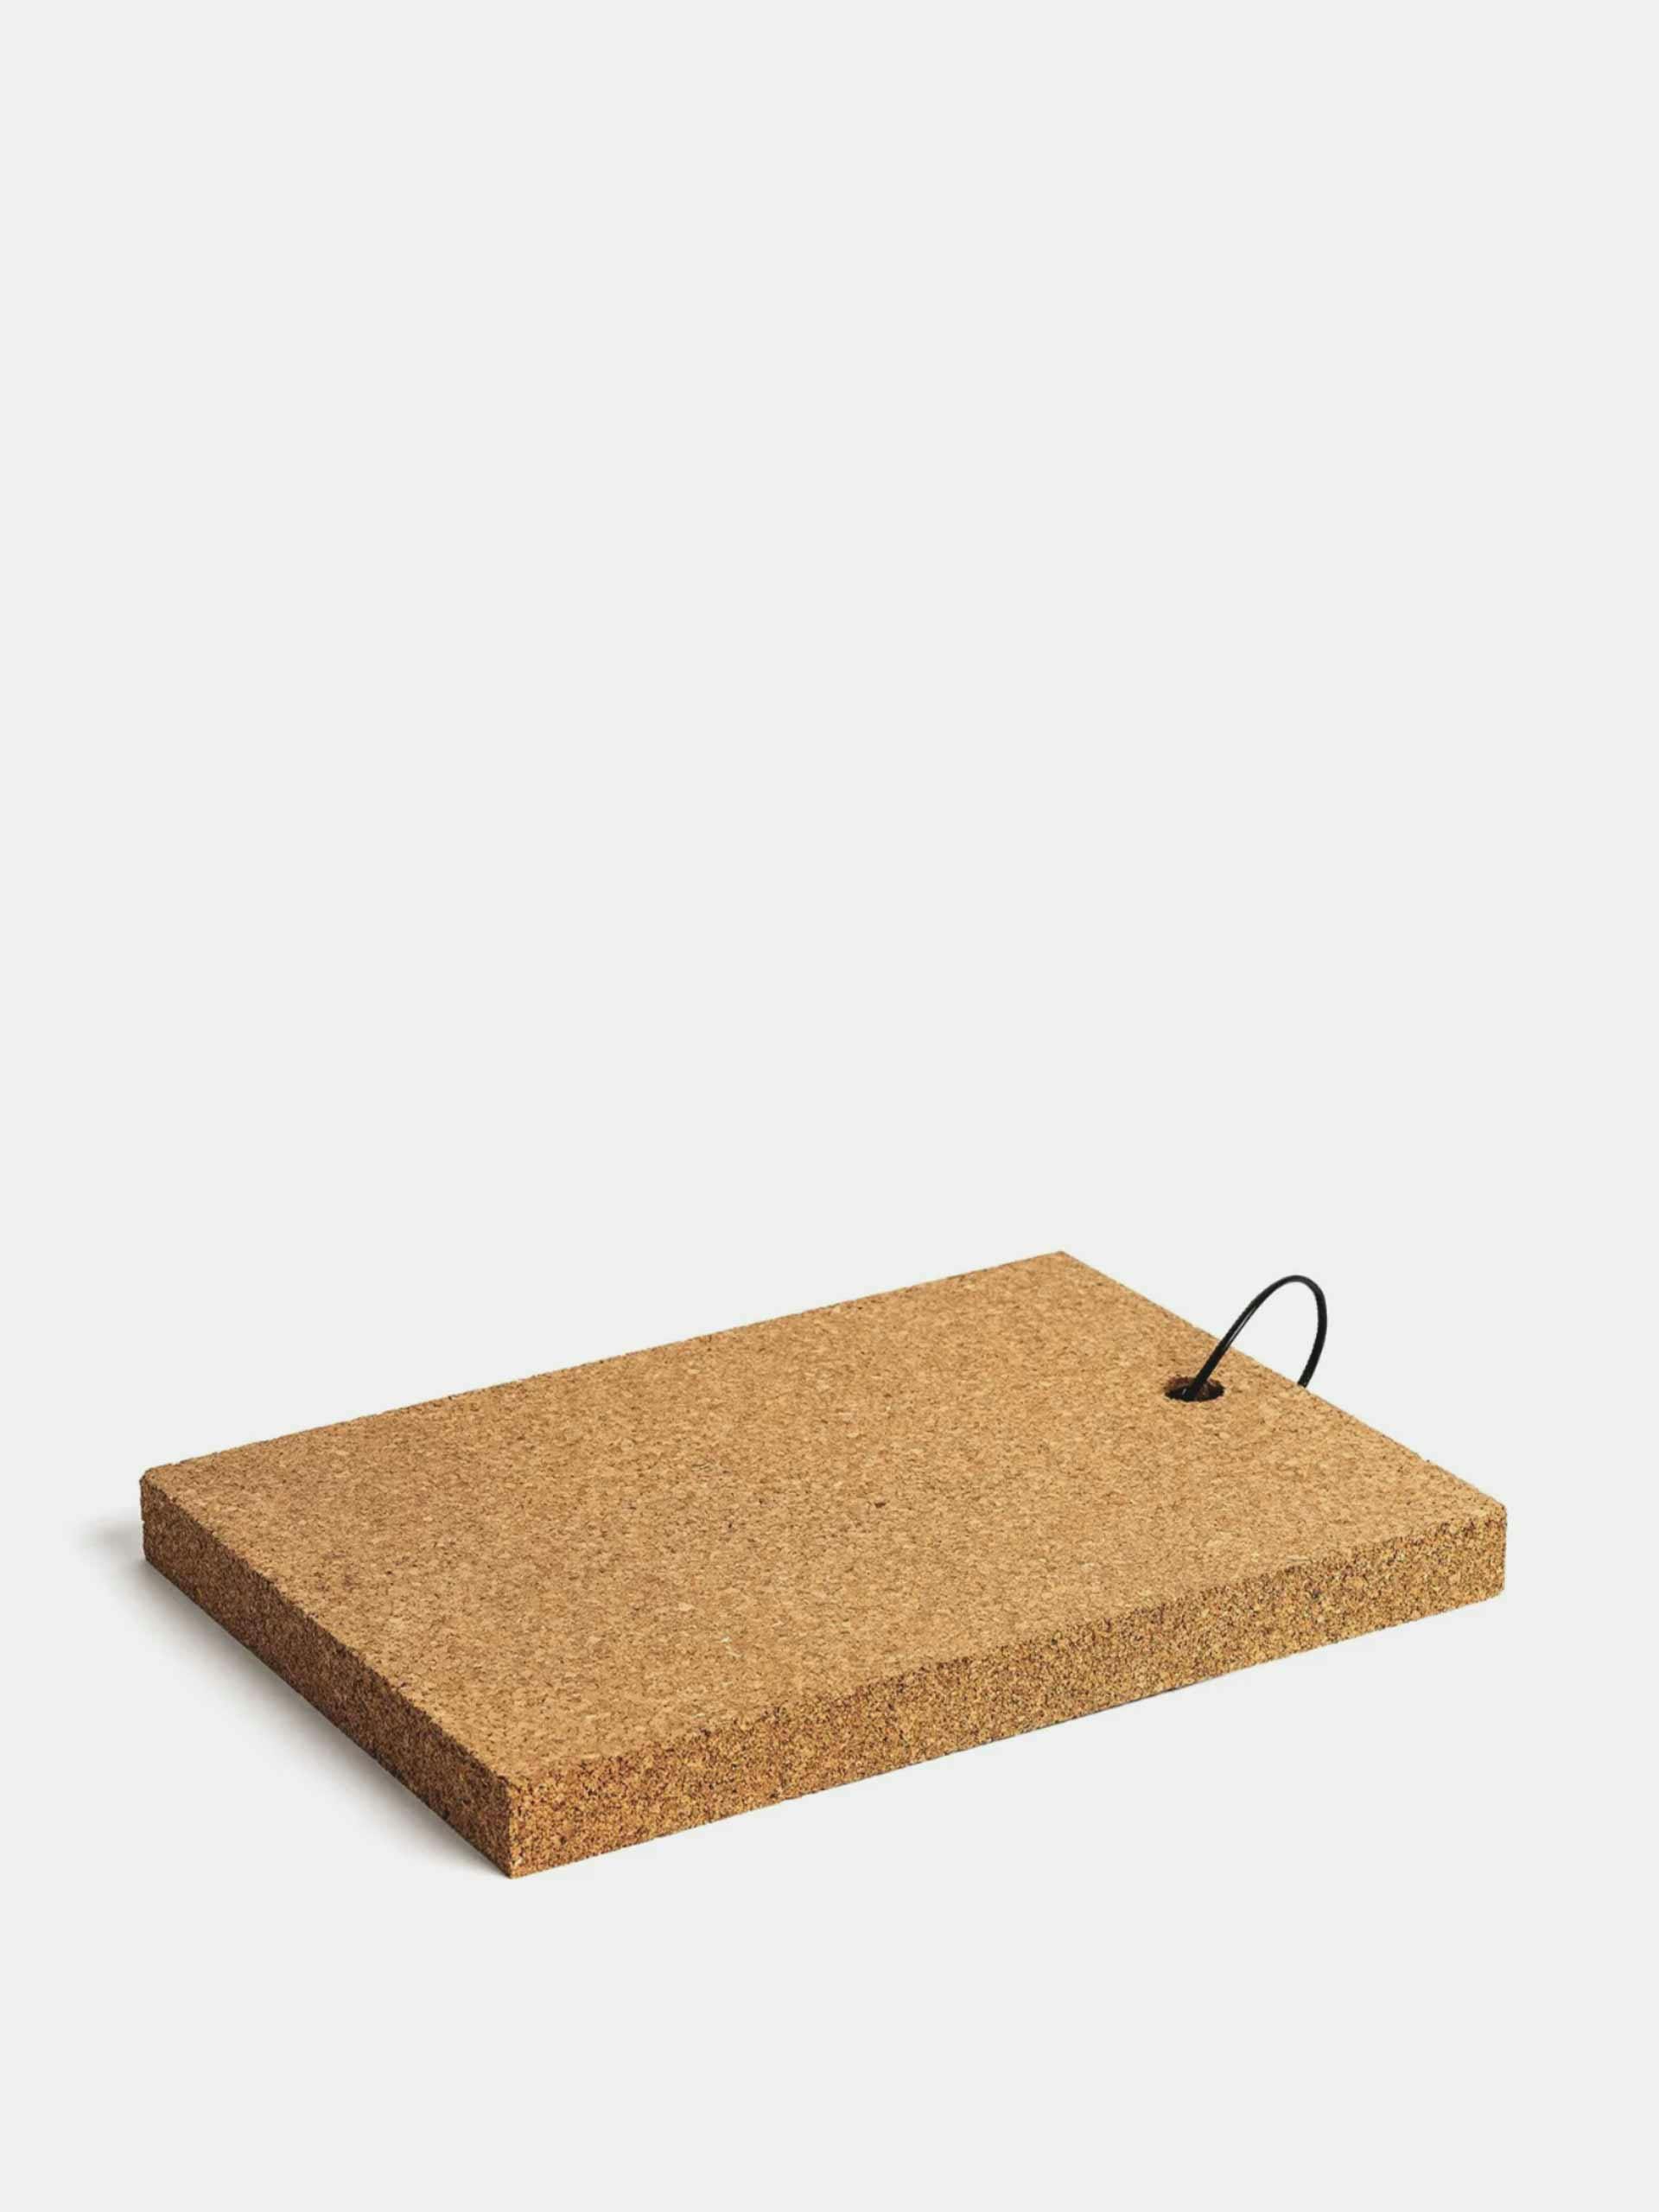 Rectangular cork board